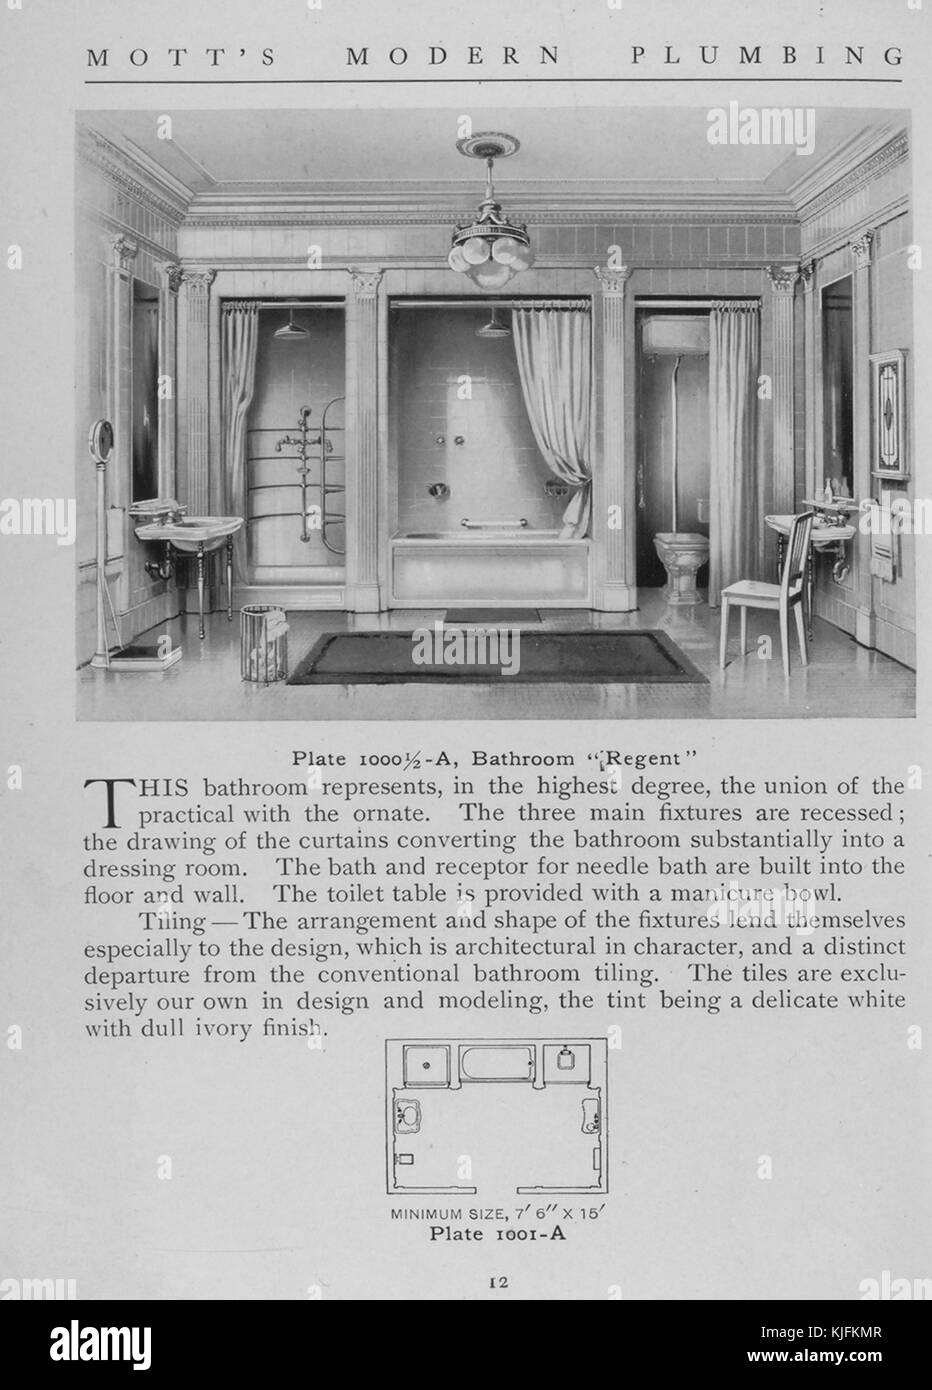 Ein Badezimmer, Regent, 1911. Von der New York Public Library. Diese Platte ist von motts modern Plumbing, ein Katalog mit verschiedenen Stilen von Badarmaturen. Stockfoto